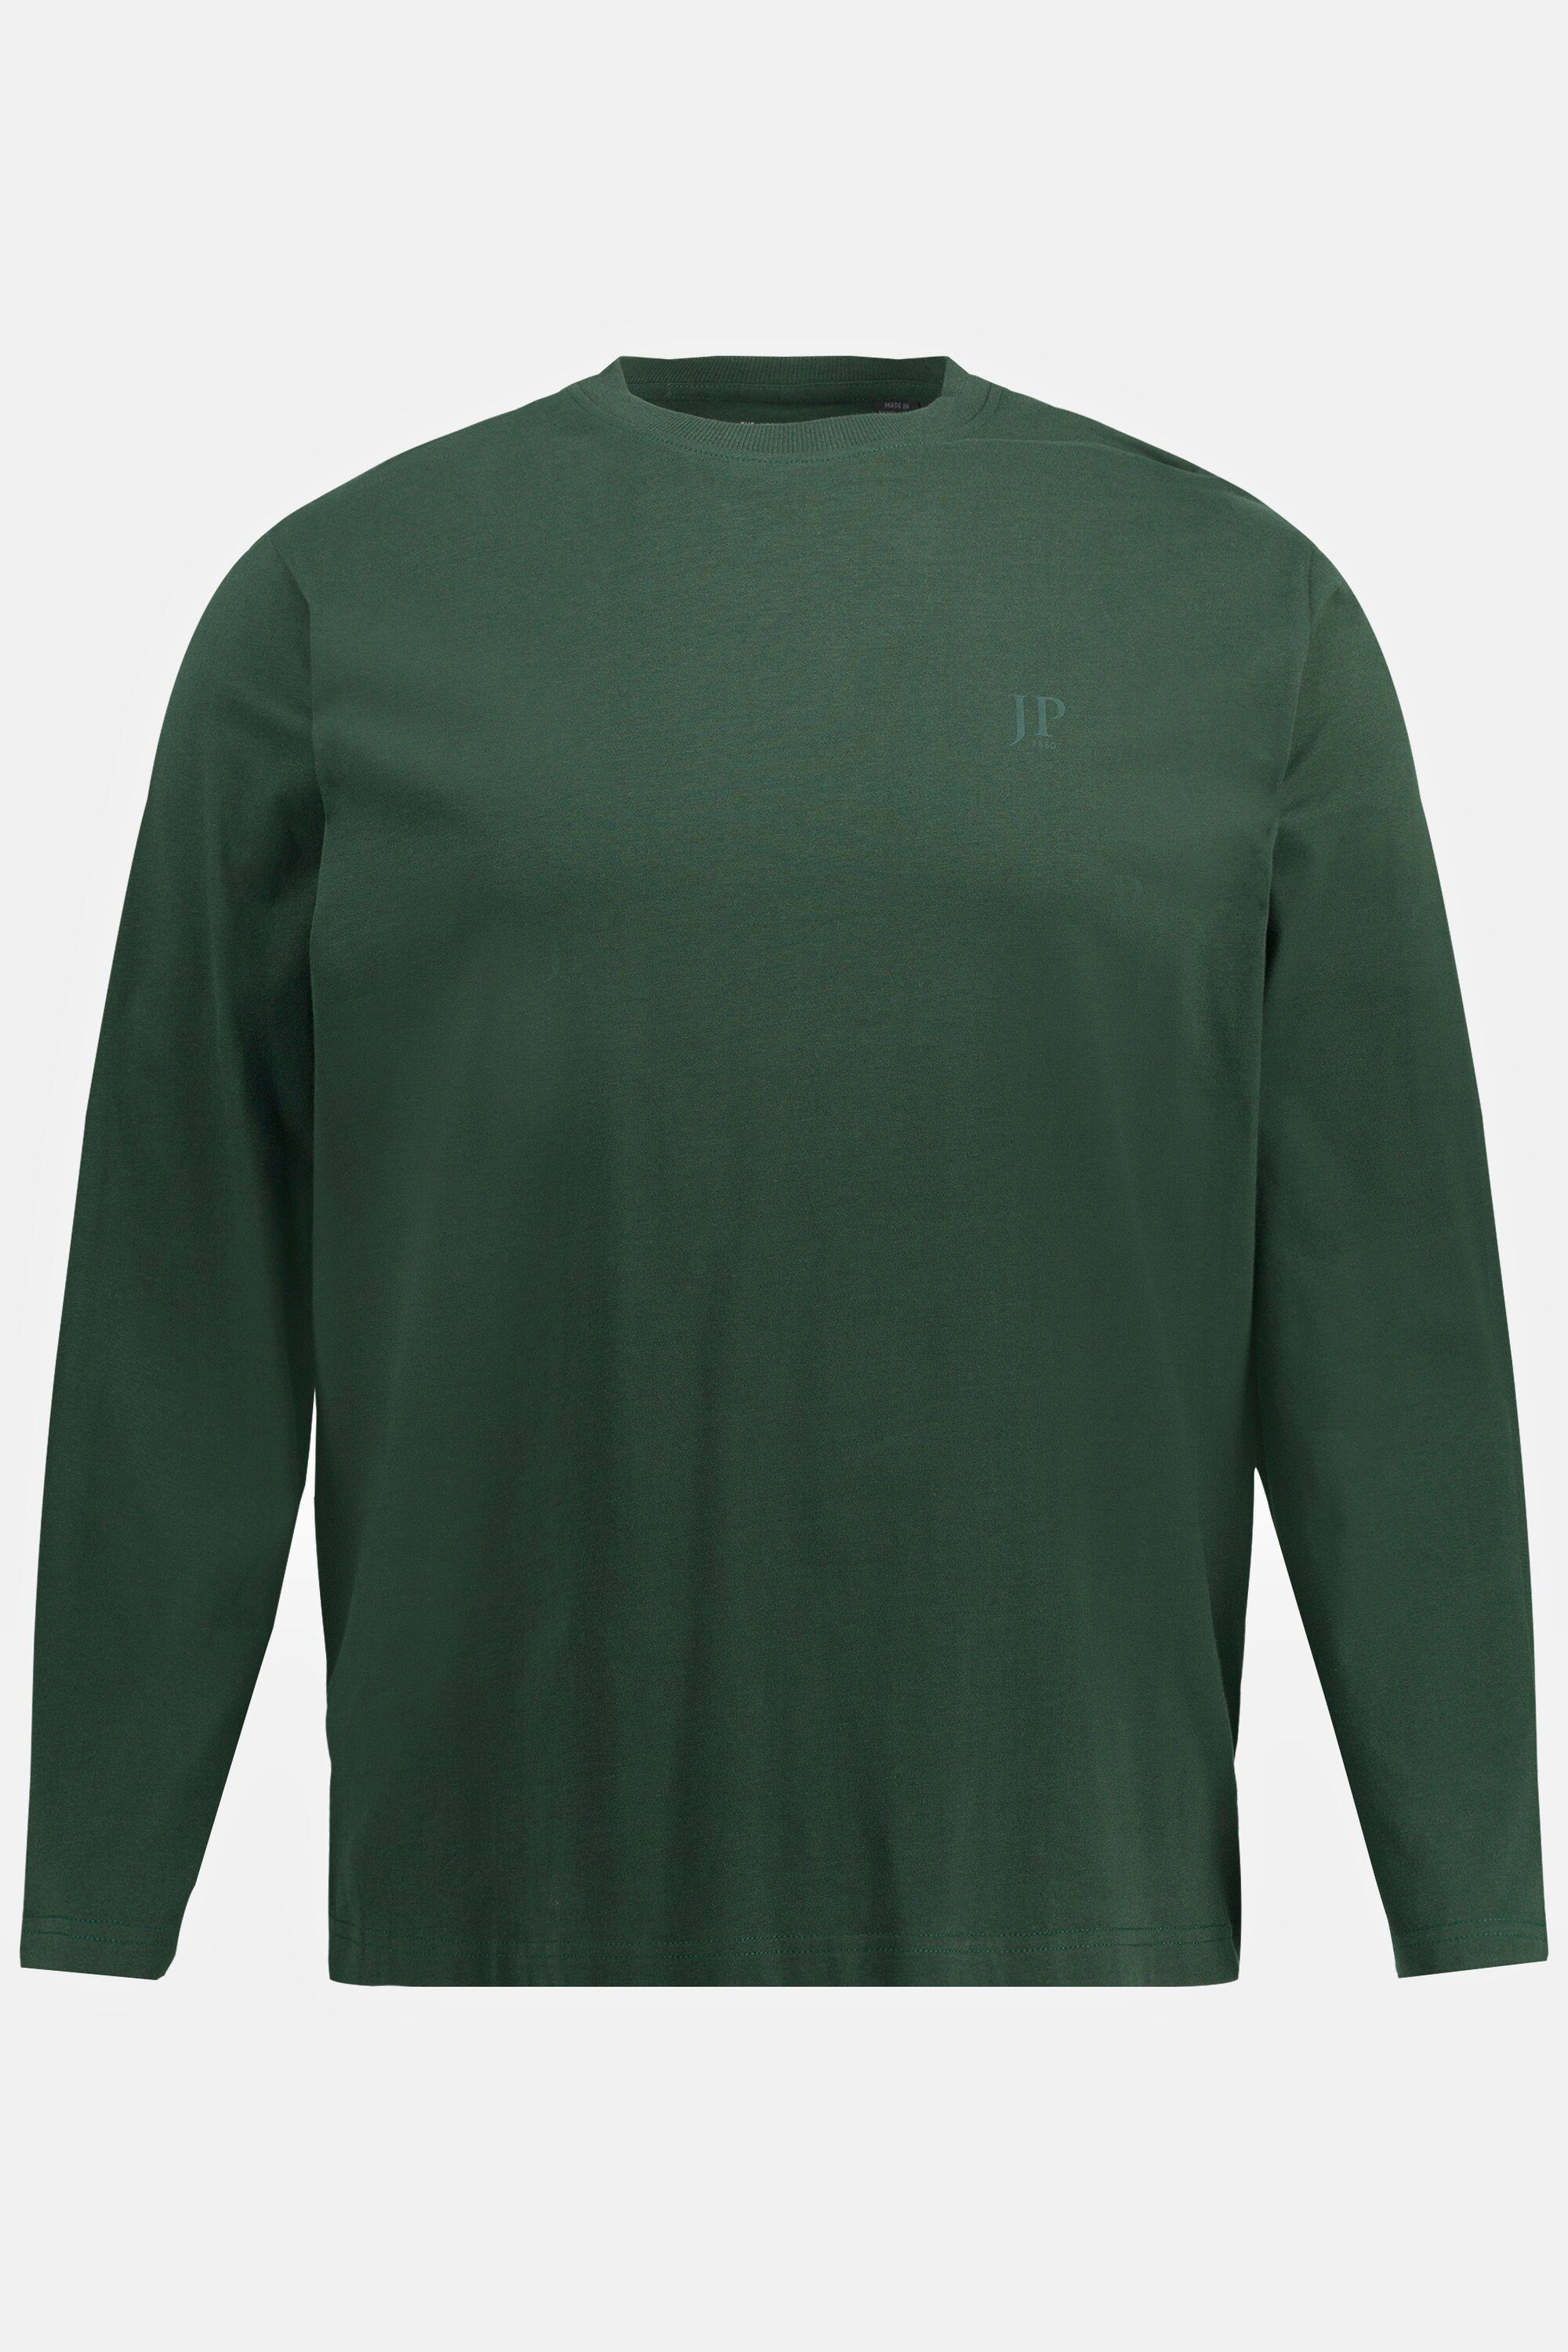 JP1880 dunkelgrün Basic 8XL T-Shirt Langarmshirt bis